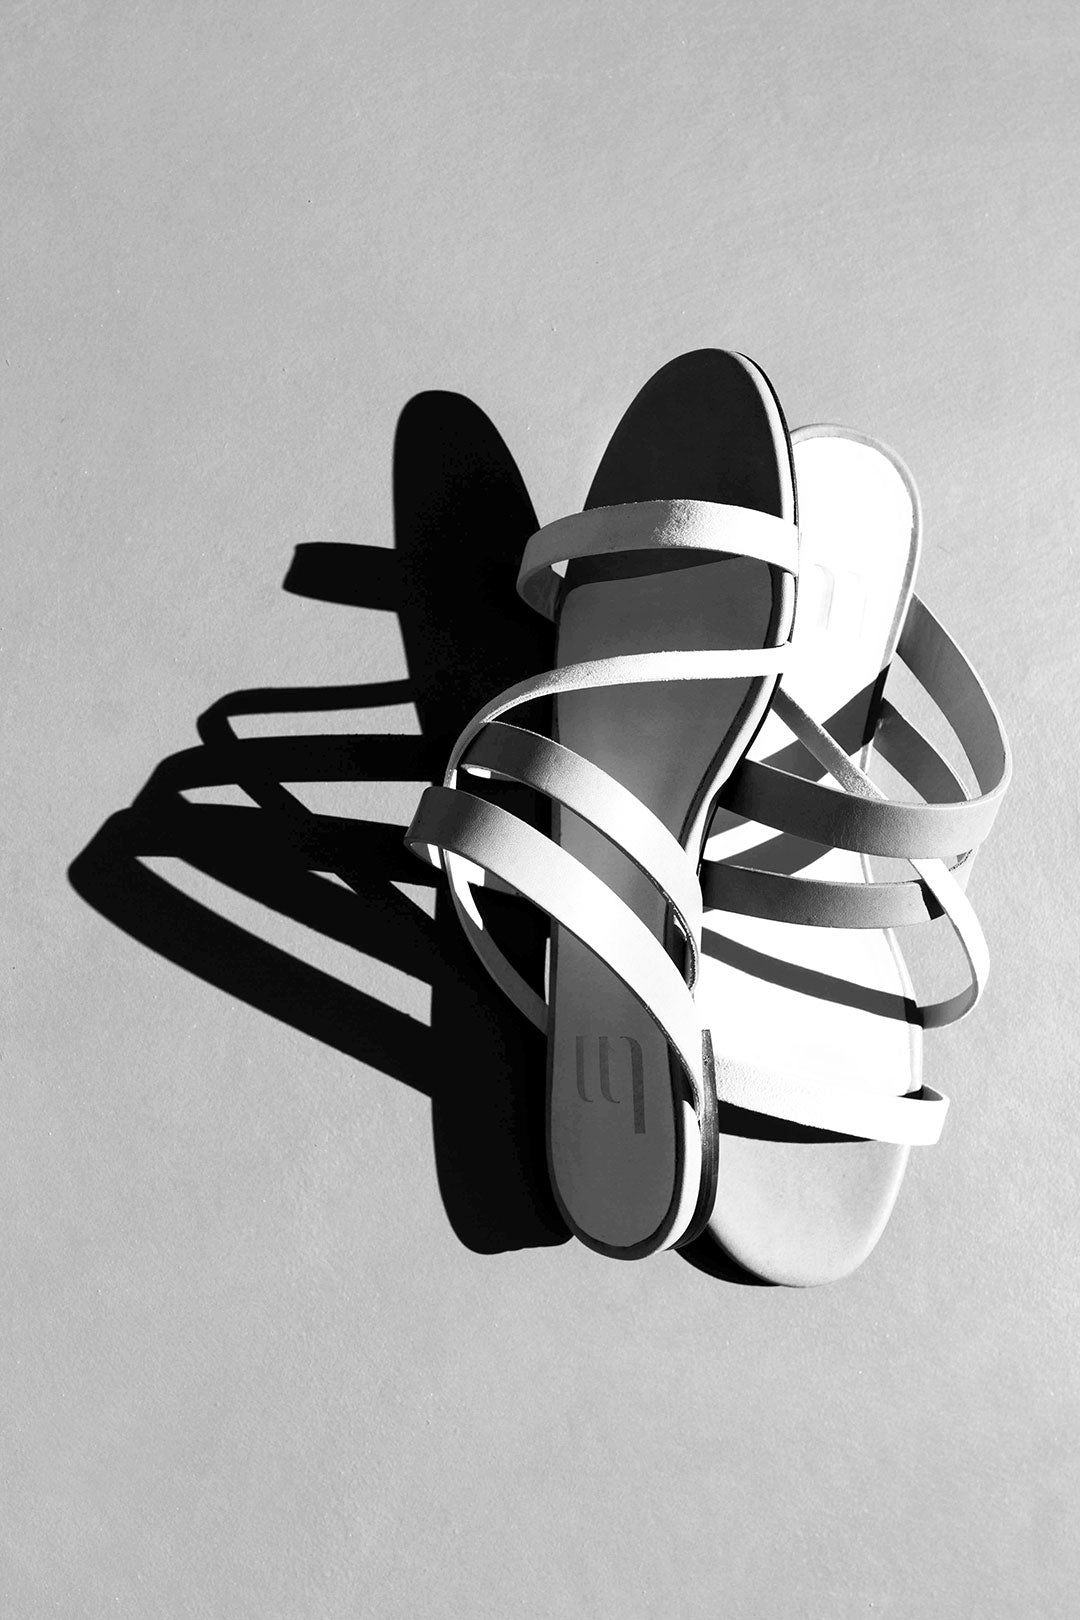 Jeu d'ombre - sandale de plage ou sandale de jour  - Designer Charlotte Sauvat - Edition Signature La Ligne Numérotée